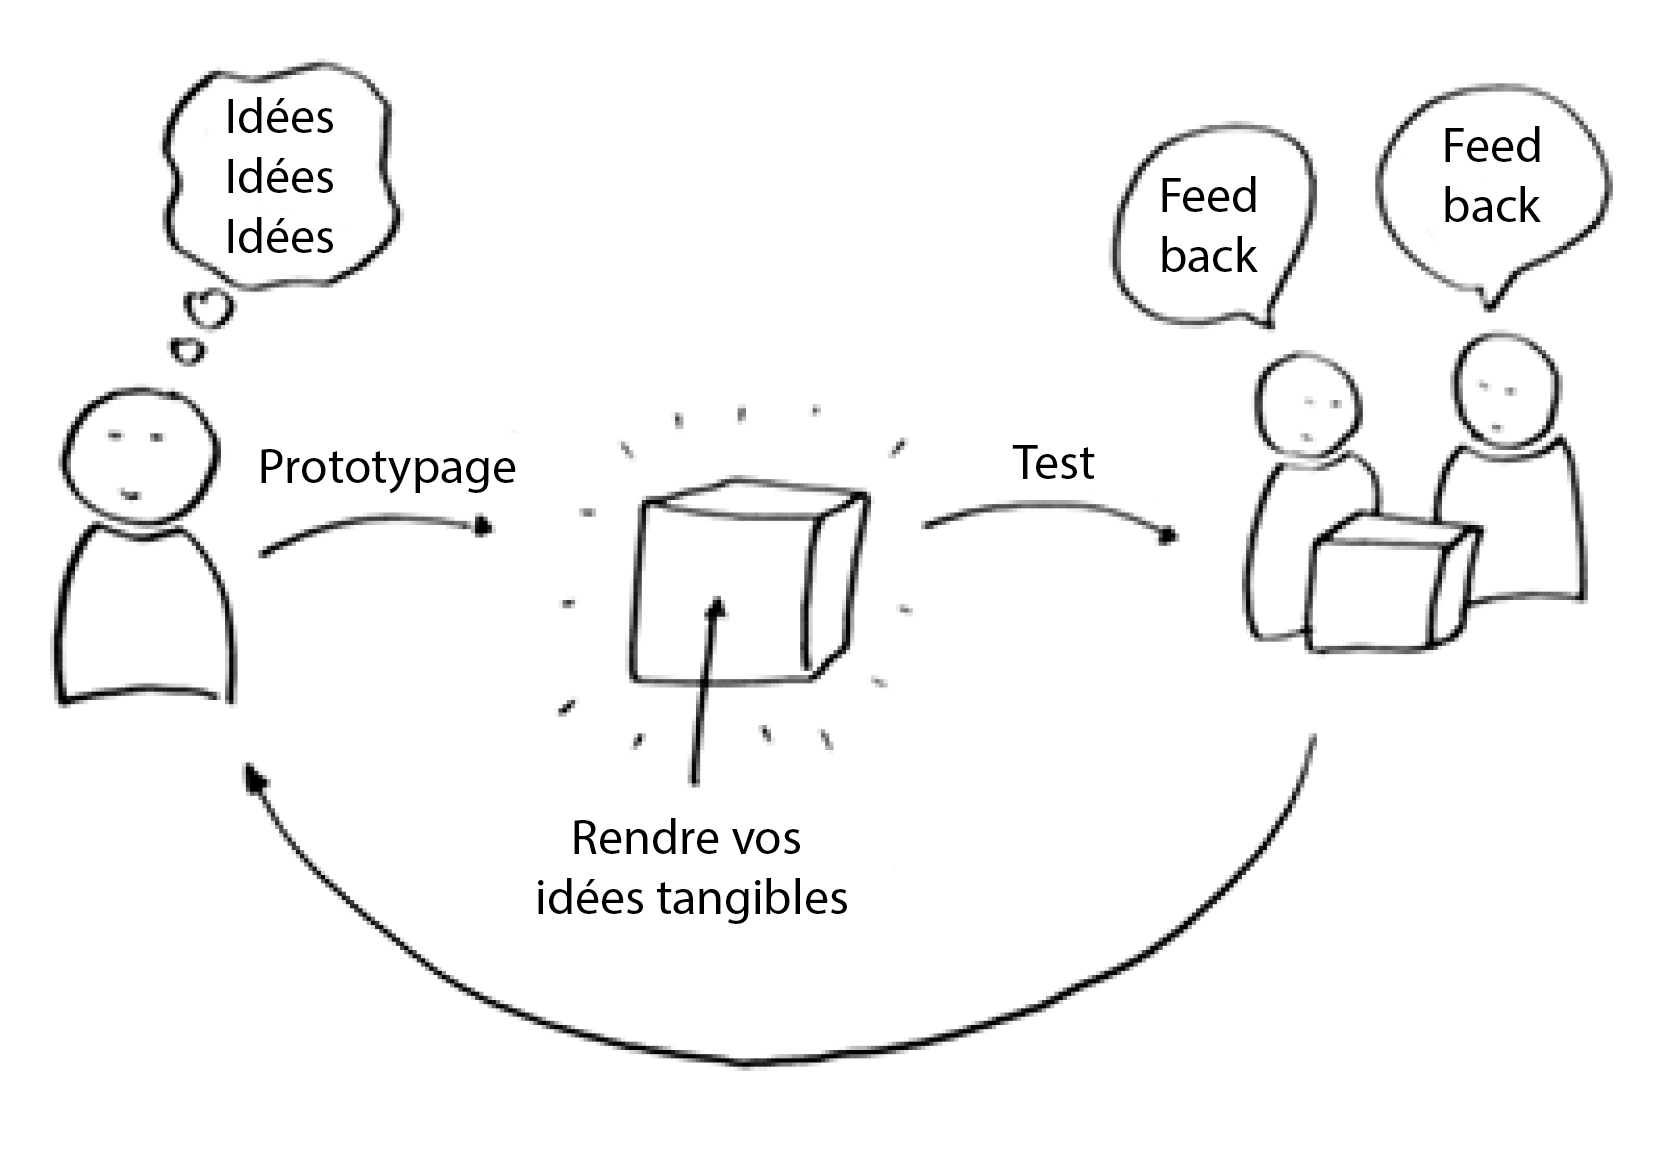 Graphique du cycle : Prototypage - Rendre vos idées tangibles - Test